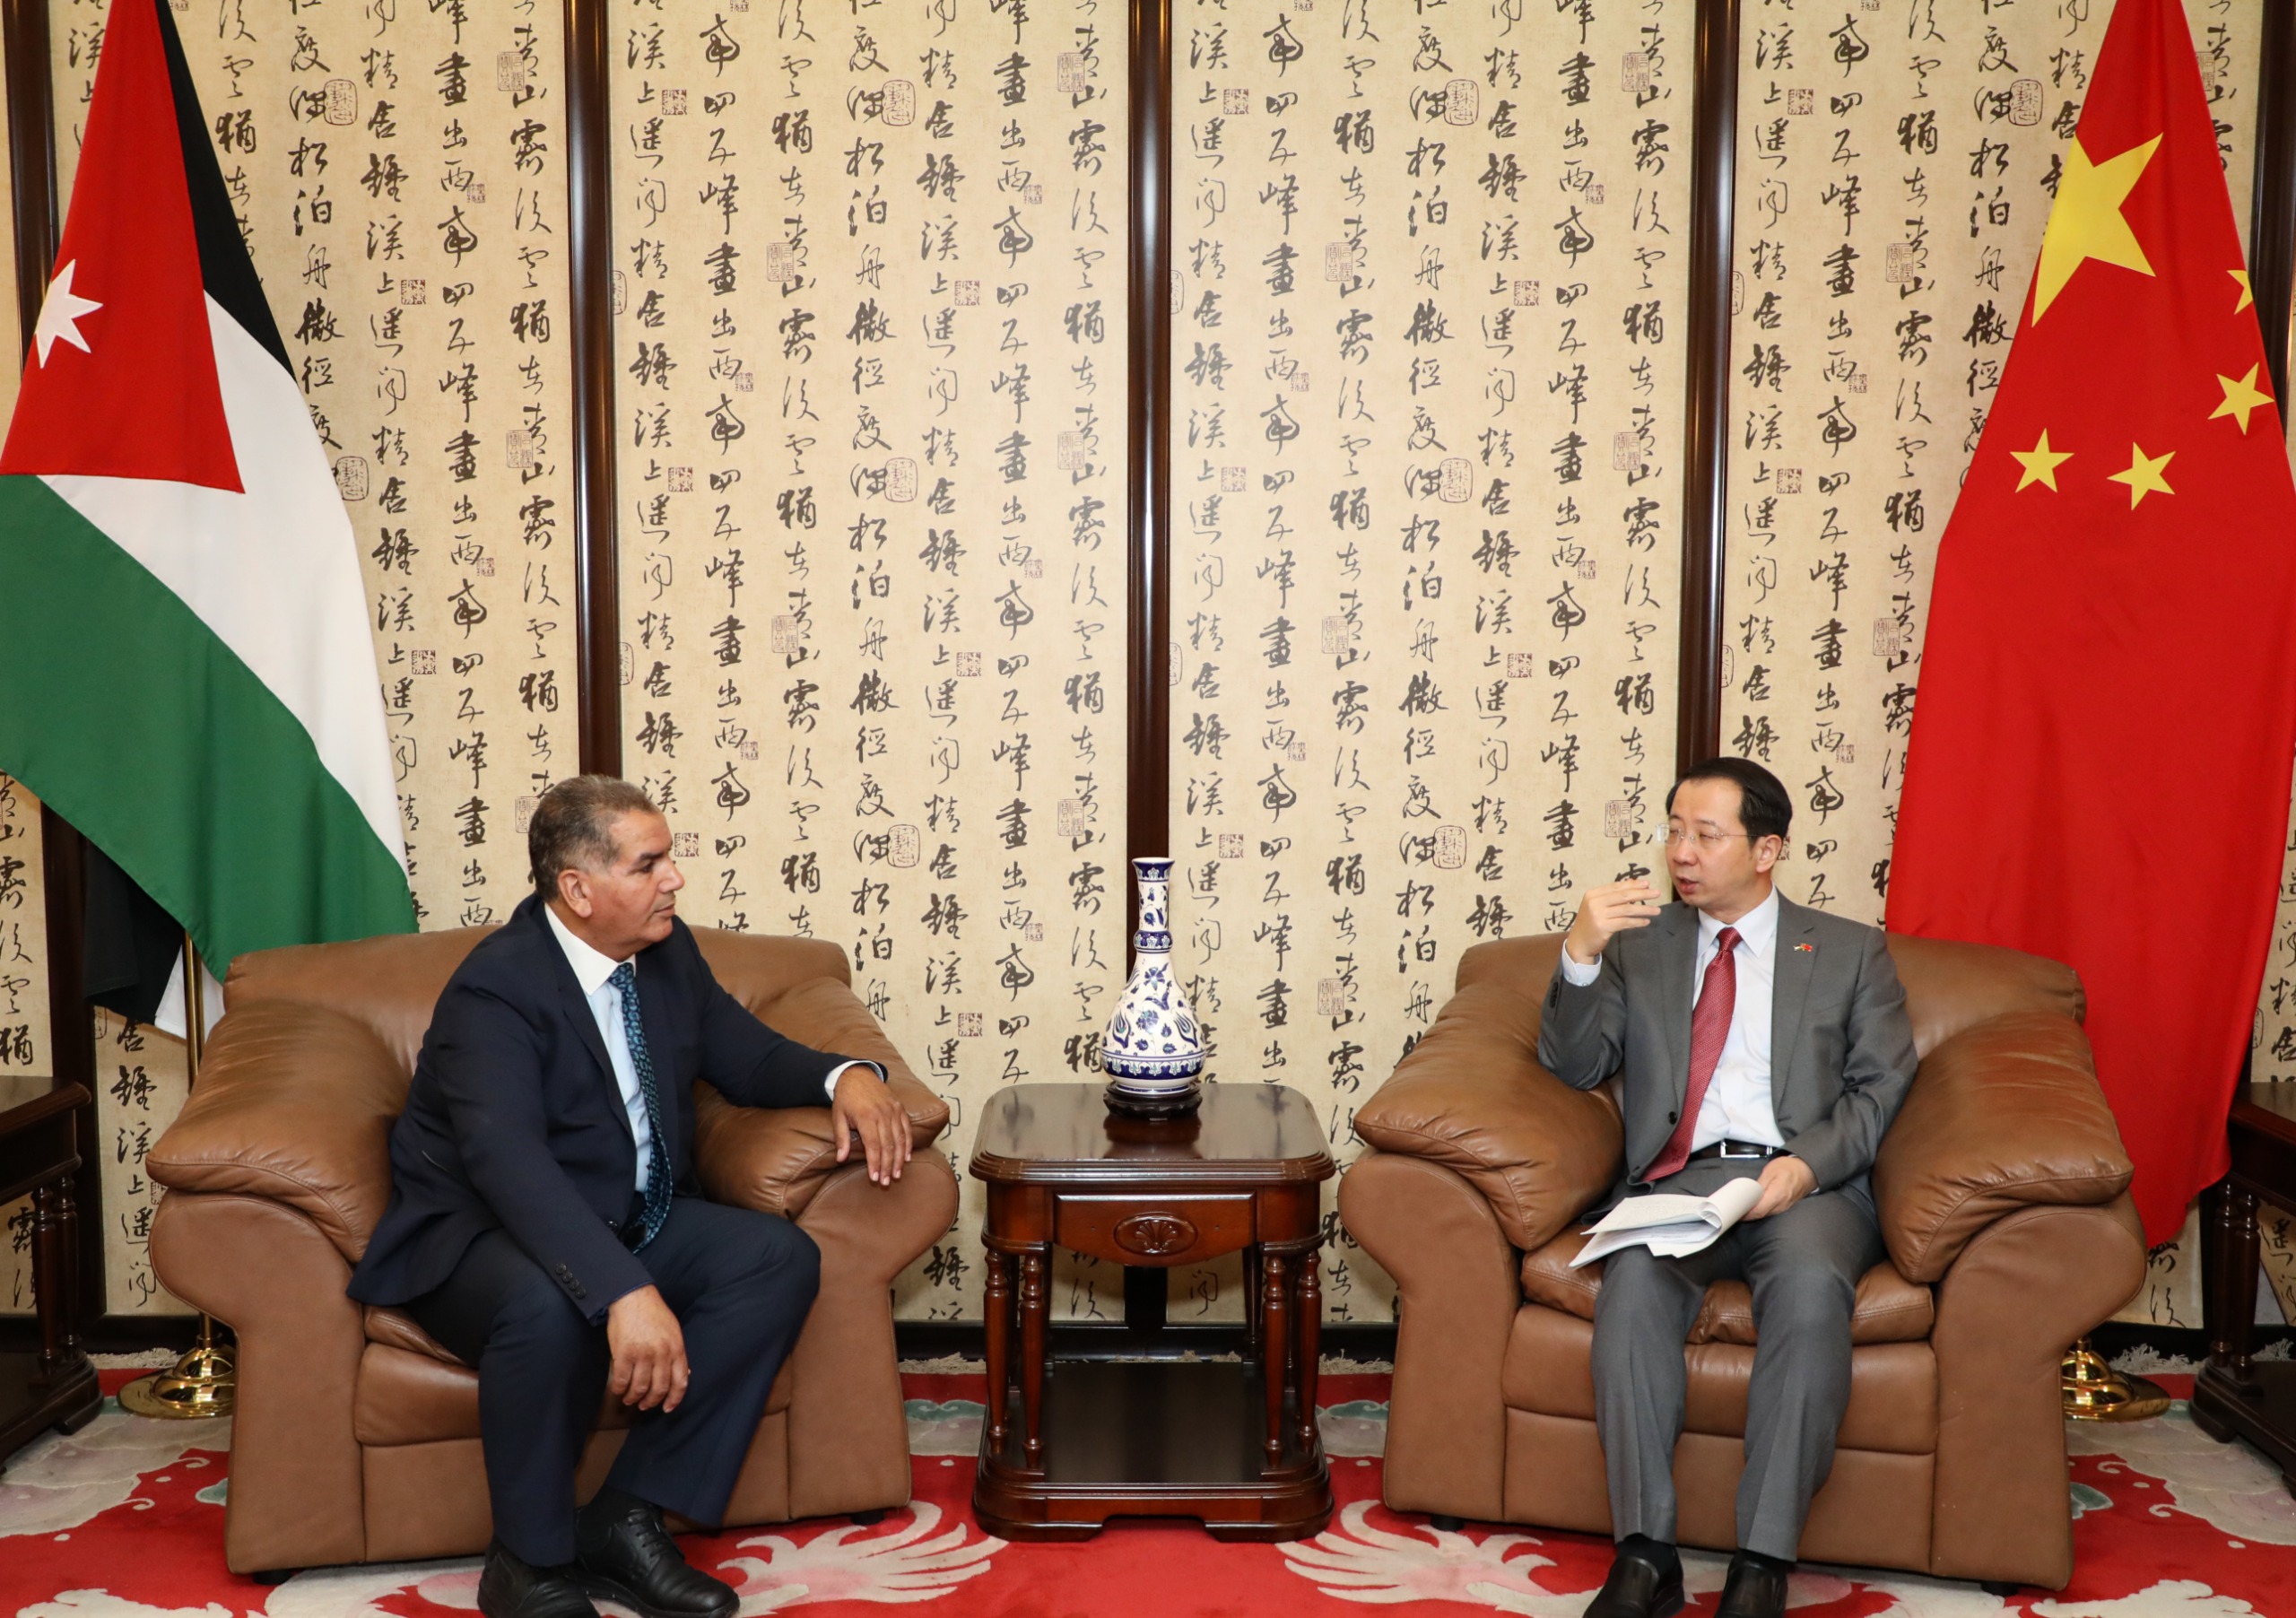 الخطوات الإصلاحية الثابتة للأردن والصين فتحت آفاقا أوسع للتعاون